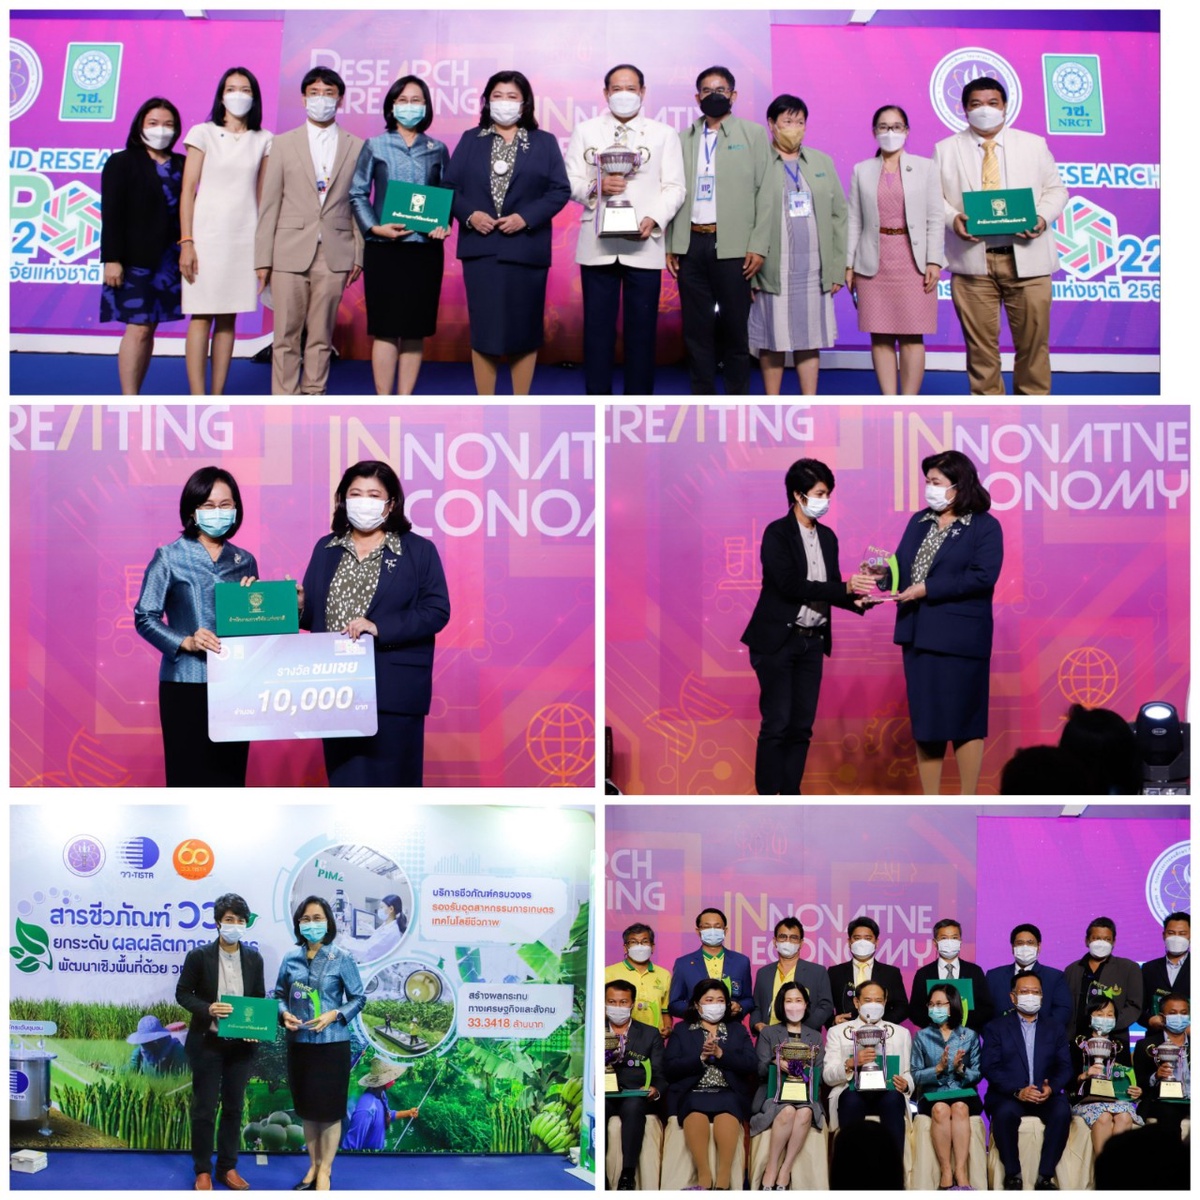 วว. คว้ารางวัล Thailand Research Expo Award 2022 จากการนำเสนอผลงาน สารชีวภัณฑ์ วว. ยกระดับผลผลิตการเกษตร พัฒนาเชิงพื้นที่ด้วย วทน.